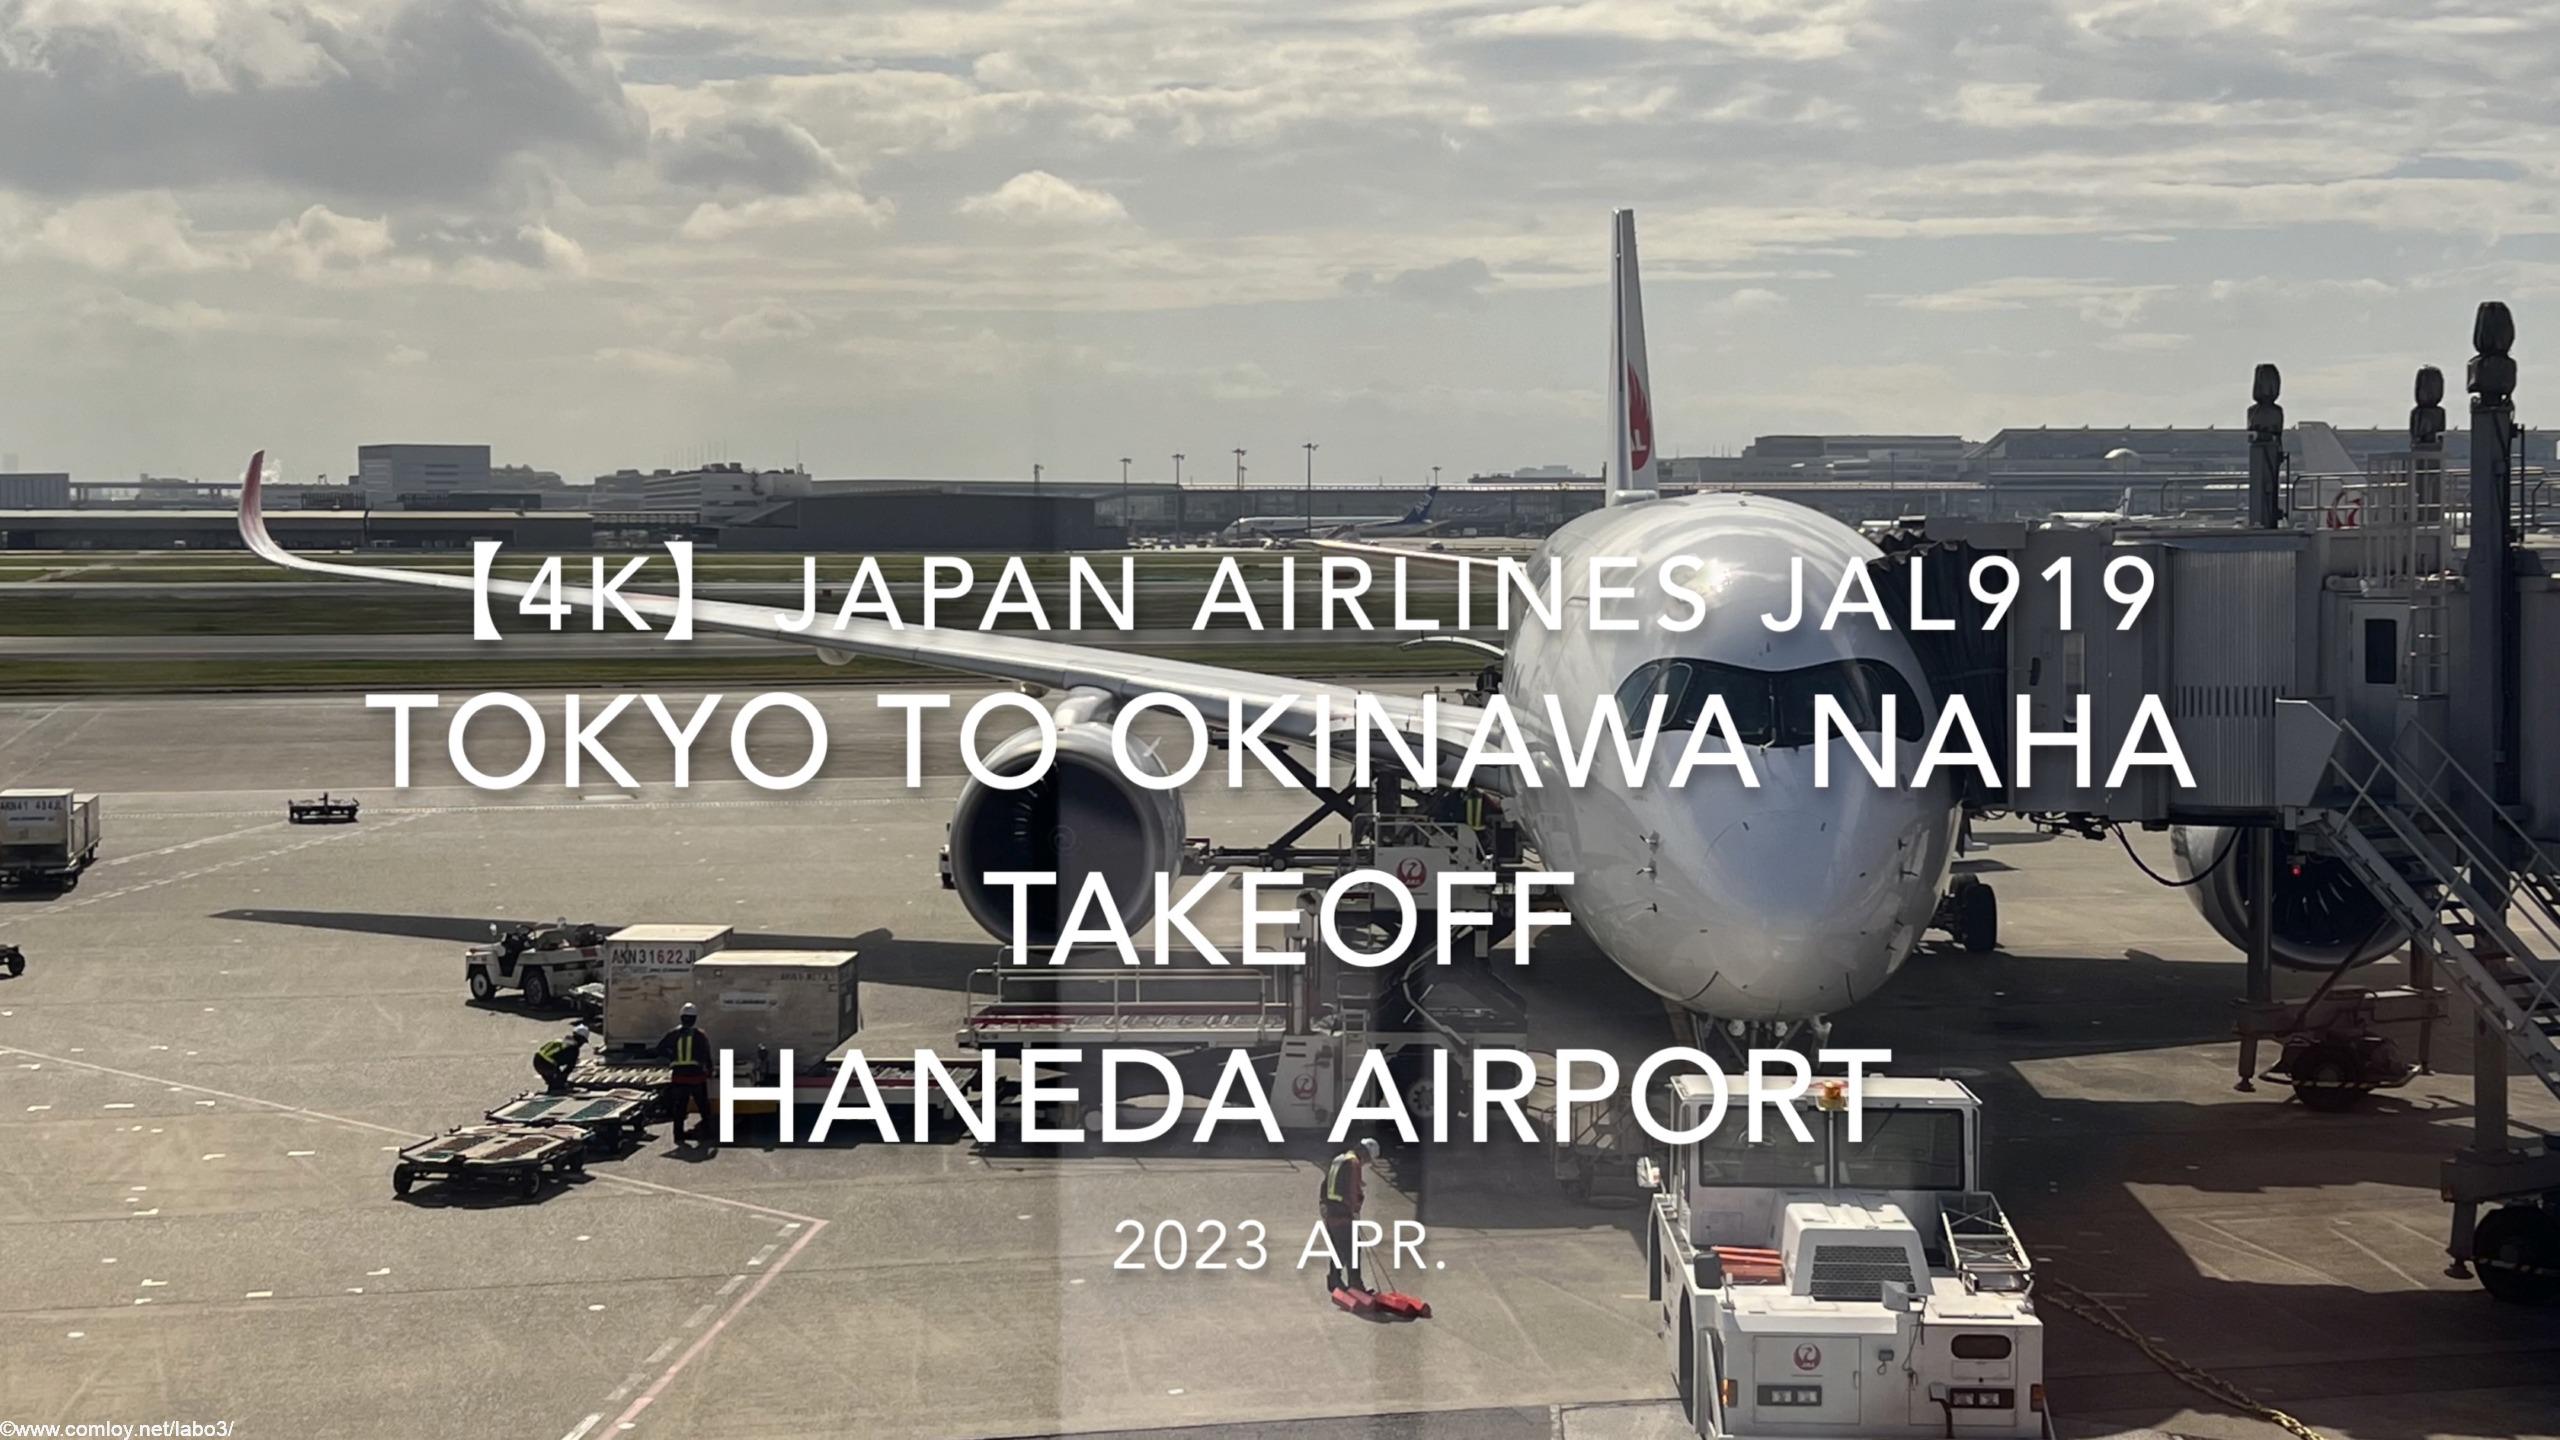 【機内から離着陸映像 4K】2023 Apr Japan AIRLINES JAL919 TOKYO to OKINAWA NAHA TAKEOFF HANEDA Airport【機内から離着陸映像 4K】2023 Apr Japan AIRLINES JAL919 TOKYO to OKINAWA NAHA TAKEOFF HANEDA Airport